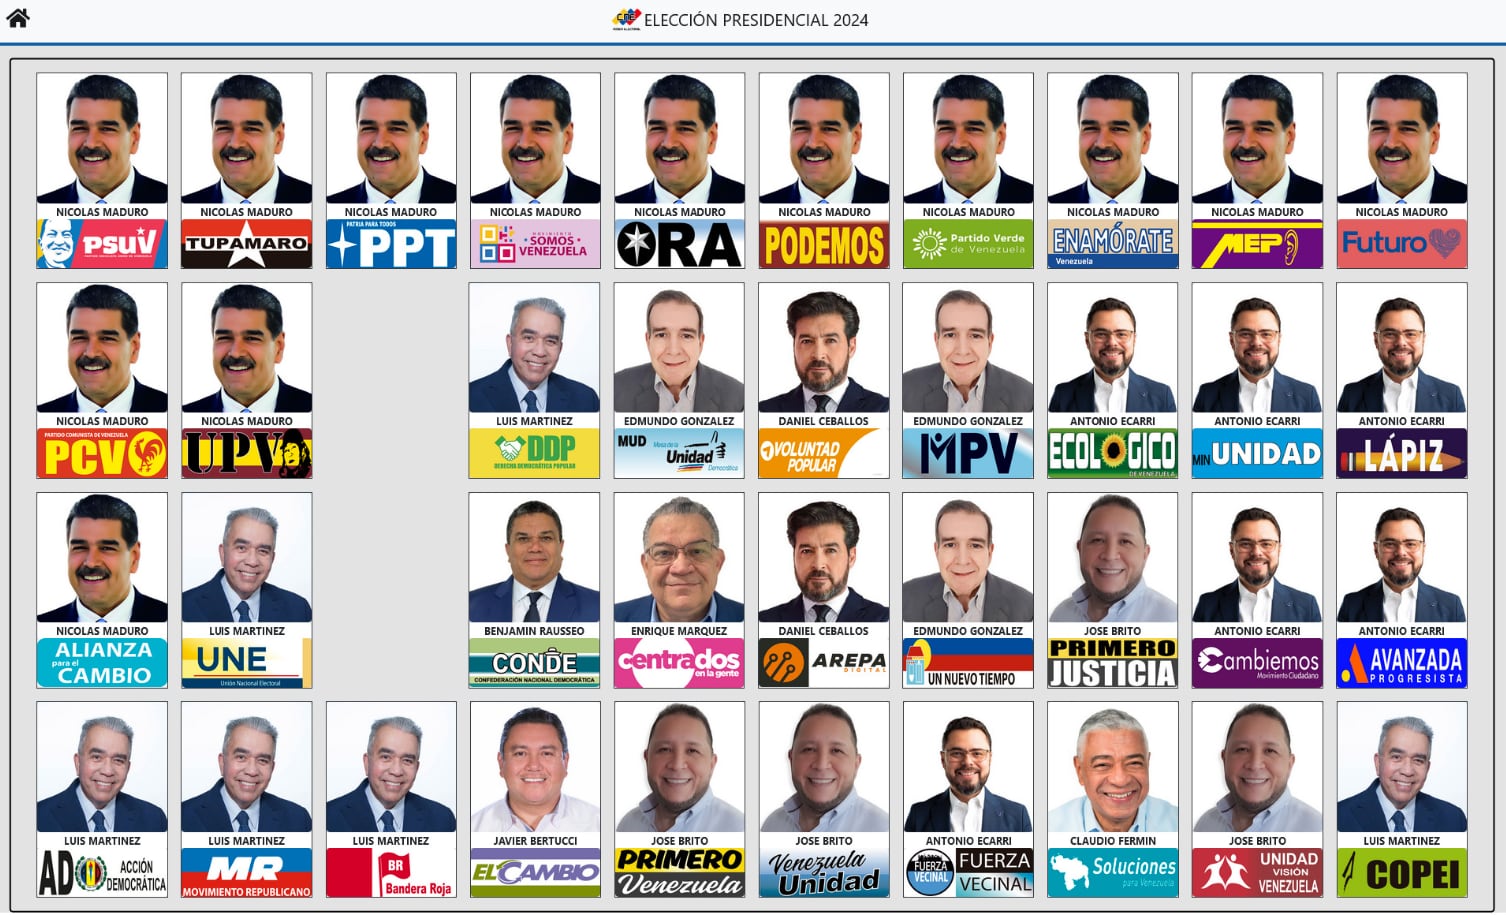 Así es la distribución de los candidatos para las elecciones presidenciales de Venezuela